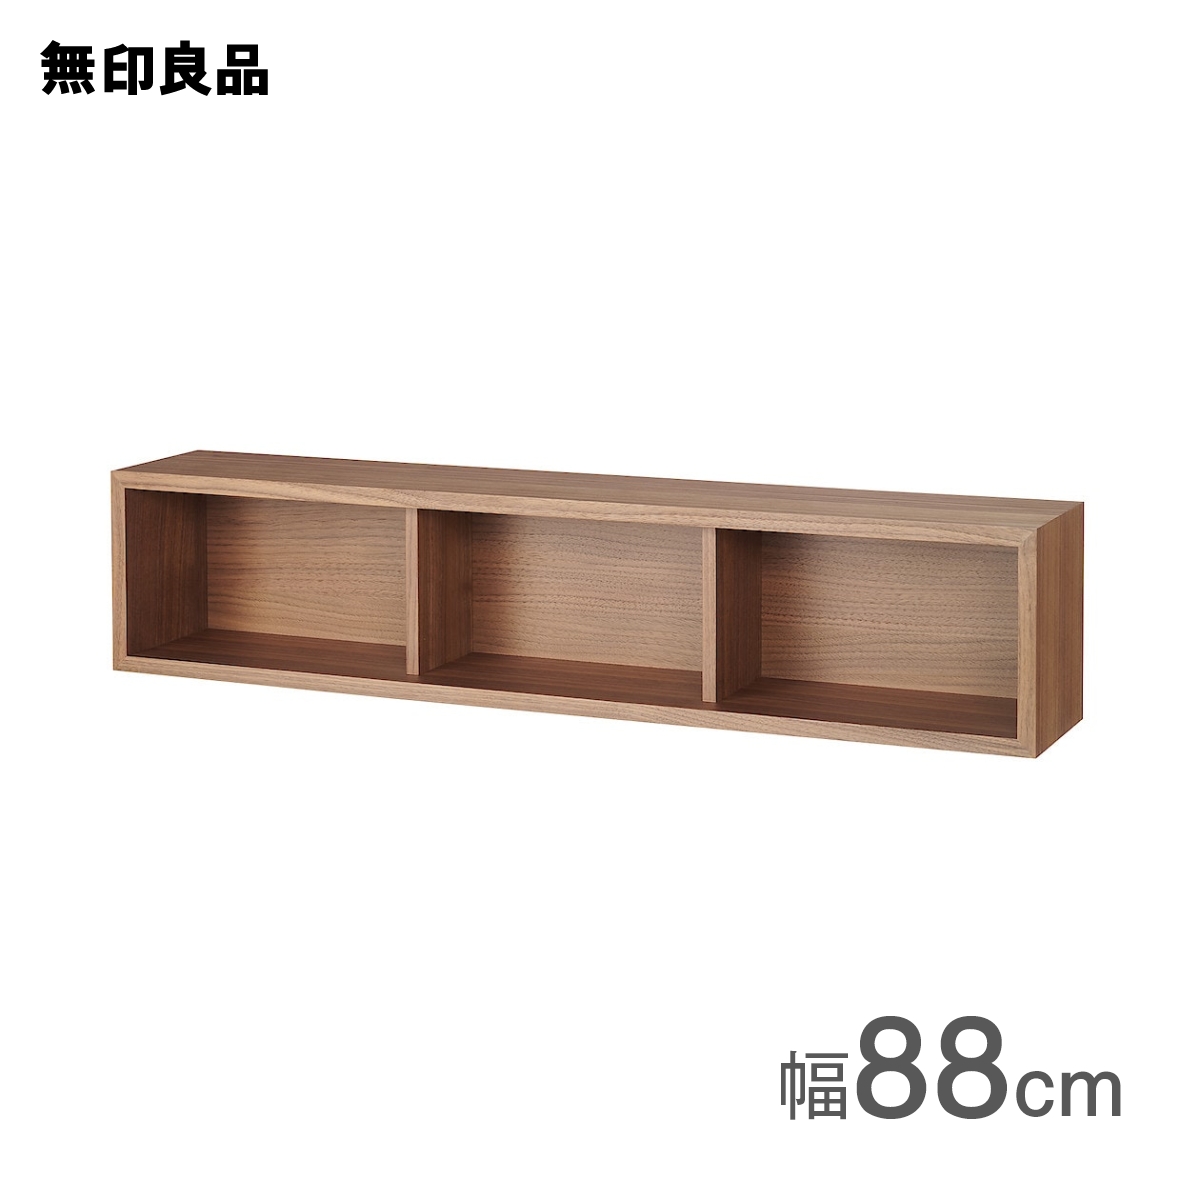 【無印良品 公式】壁に付けられる家具箱 オーク材突板 88cm